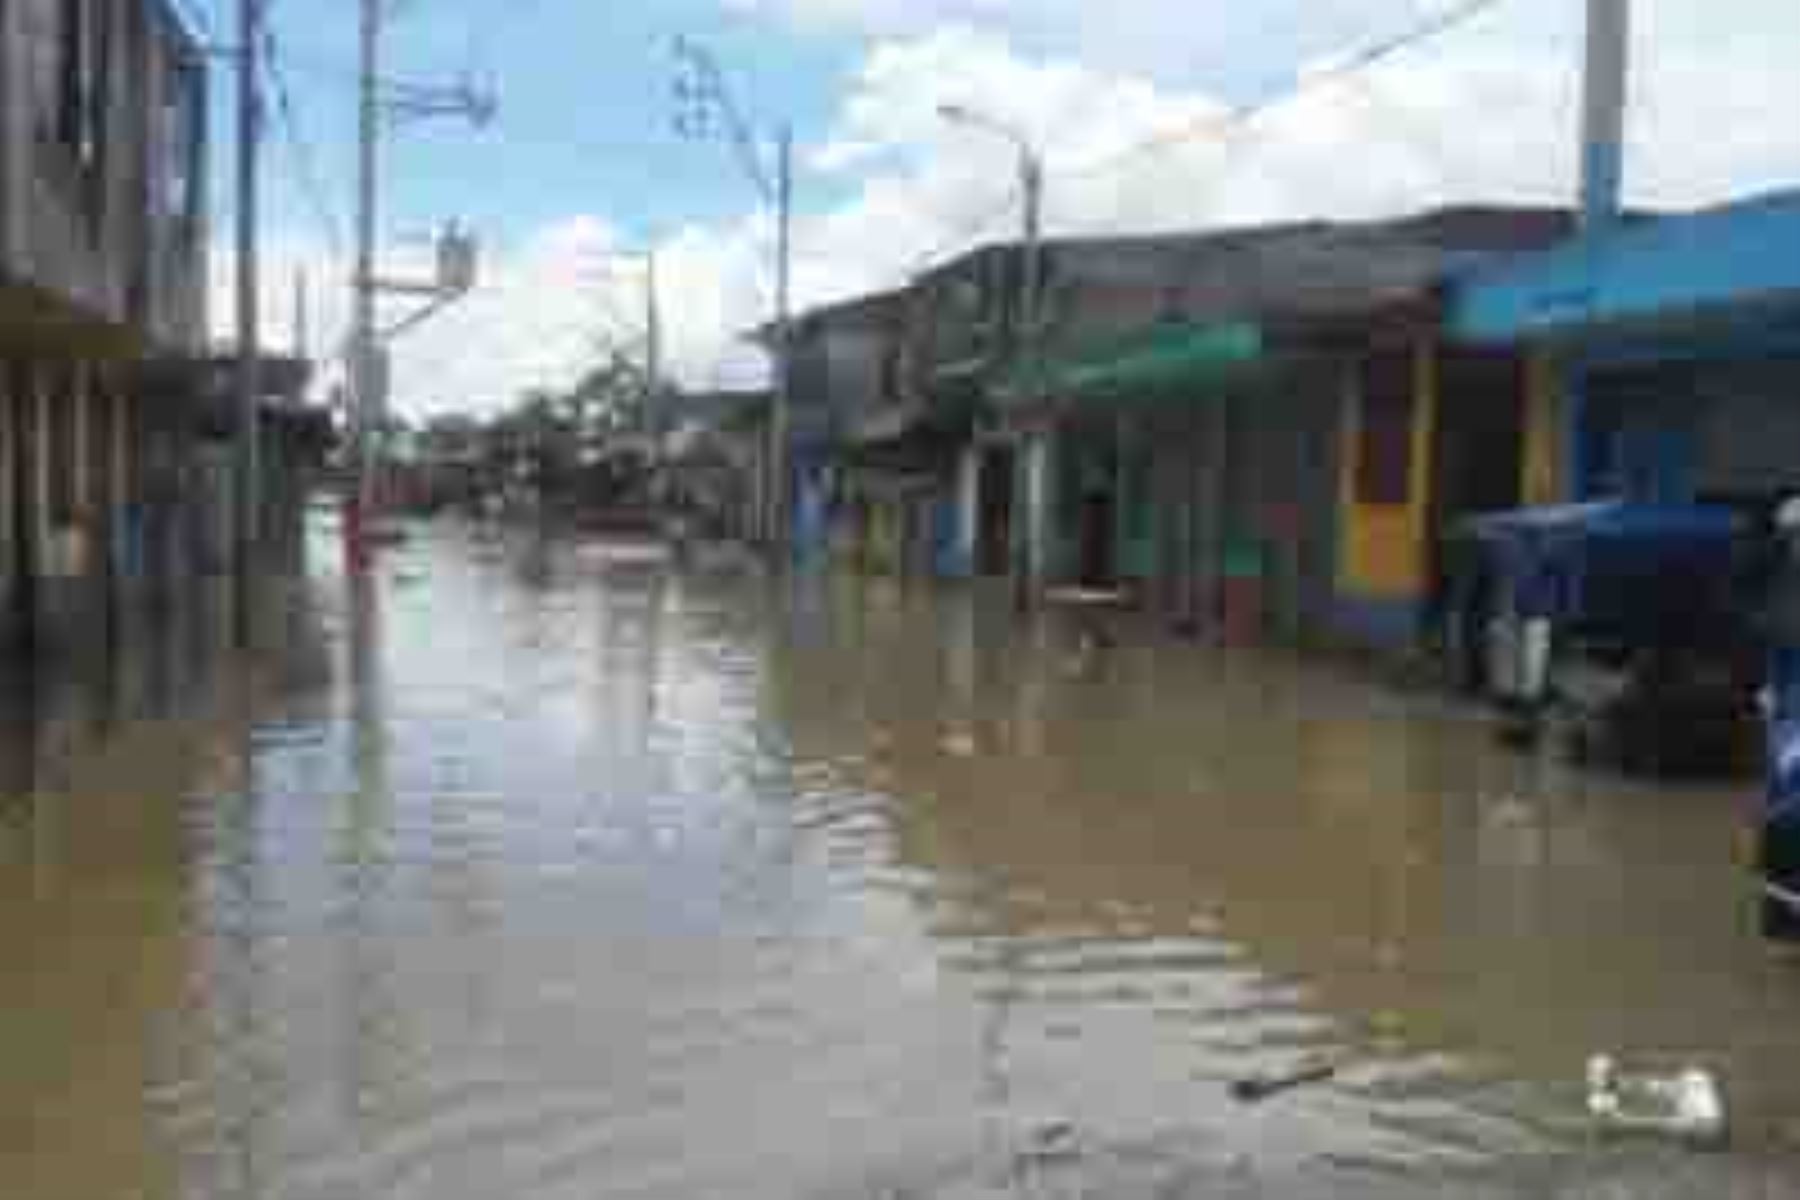 El Instituto Nacional de Defensa Civil (Indeci) informó que las intensas lluvias intensas registradas en la región amazónica provocaron el desborde del río Madre de Dios, afectando a 120 viviendas y locales comerciales en la localidad de Puerto Rosario de Laberinto, distrito de Laberinto, provincia de Tambopata.